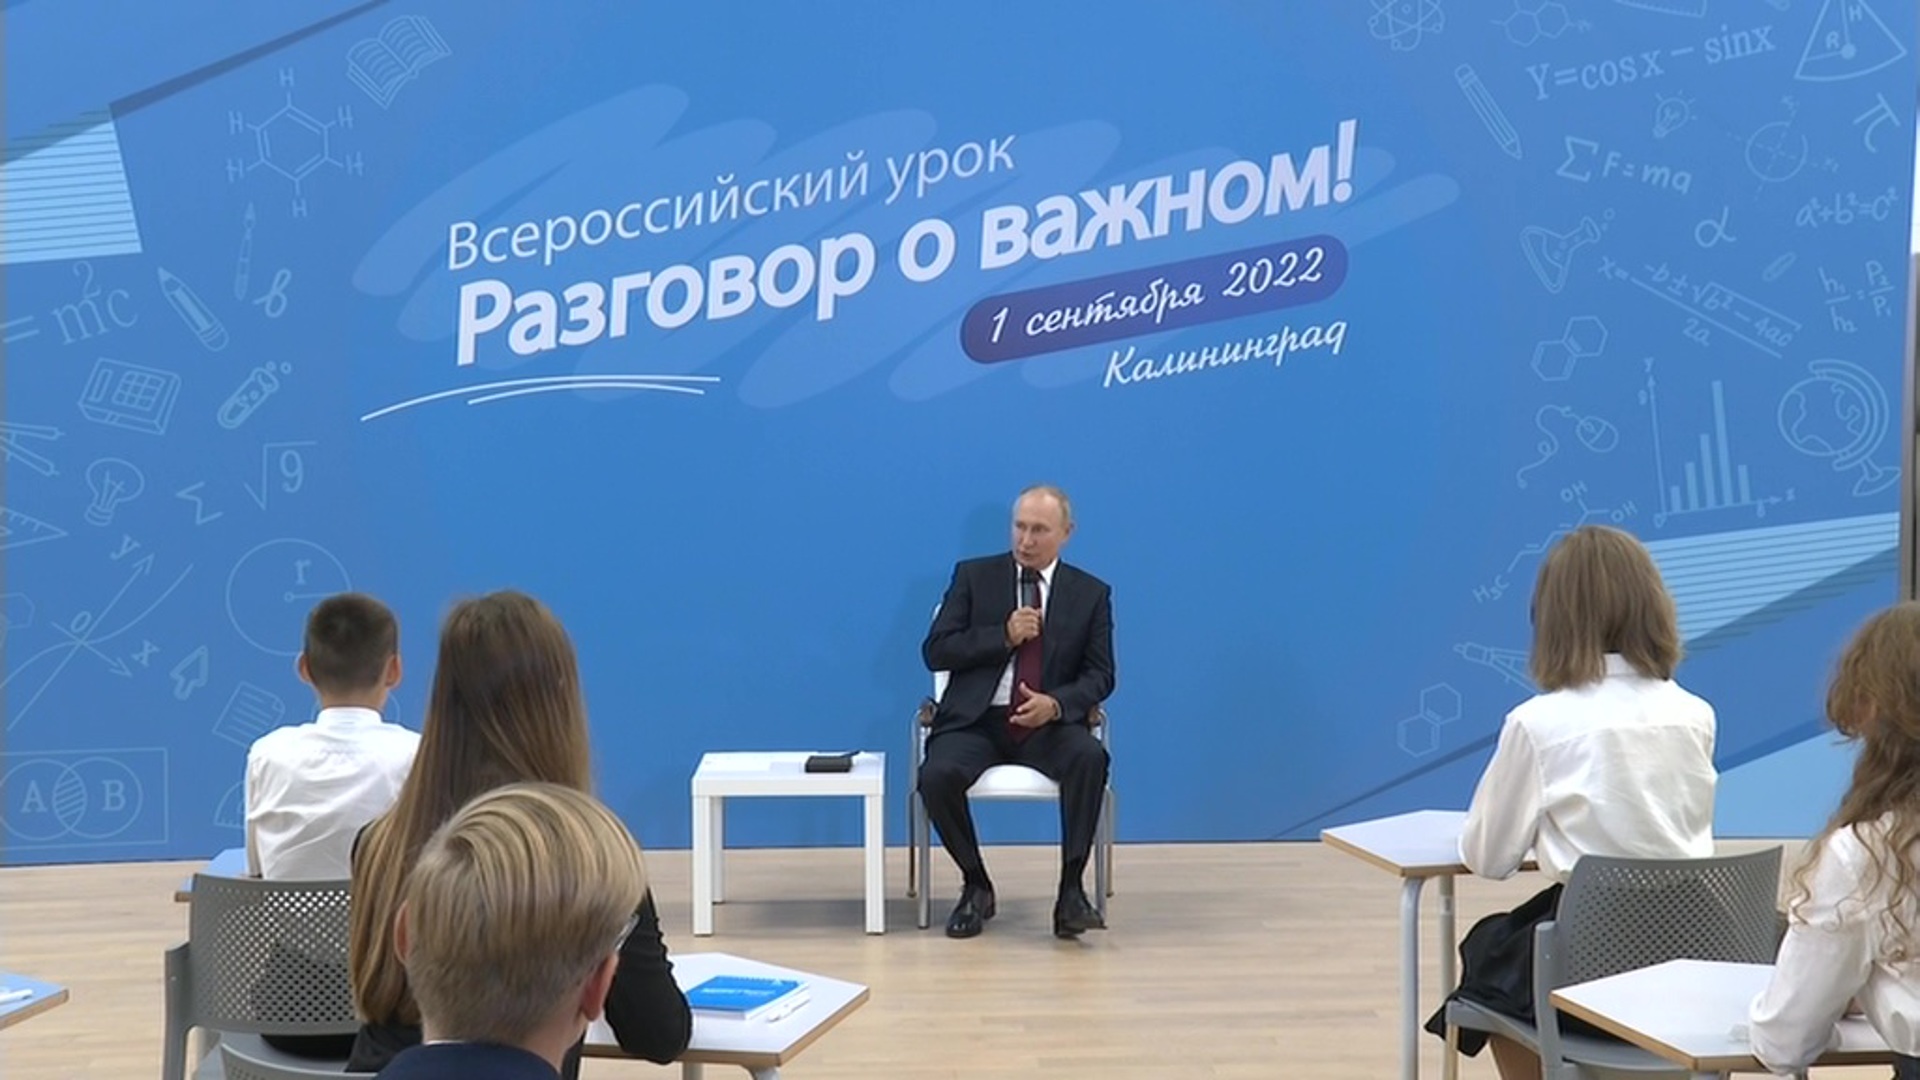 Удивительные люди от 7 апреля 2024. Открытый урок разговоры о важном с Владимиром Путиным. Разговор о важном с президентом 1 сентября 2022. Разговоры о важном.